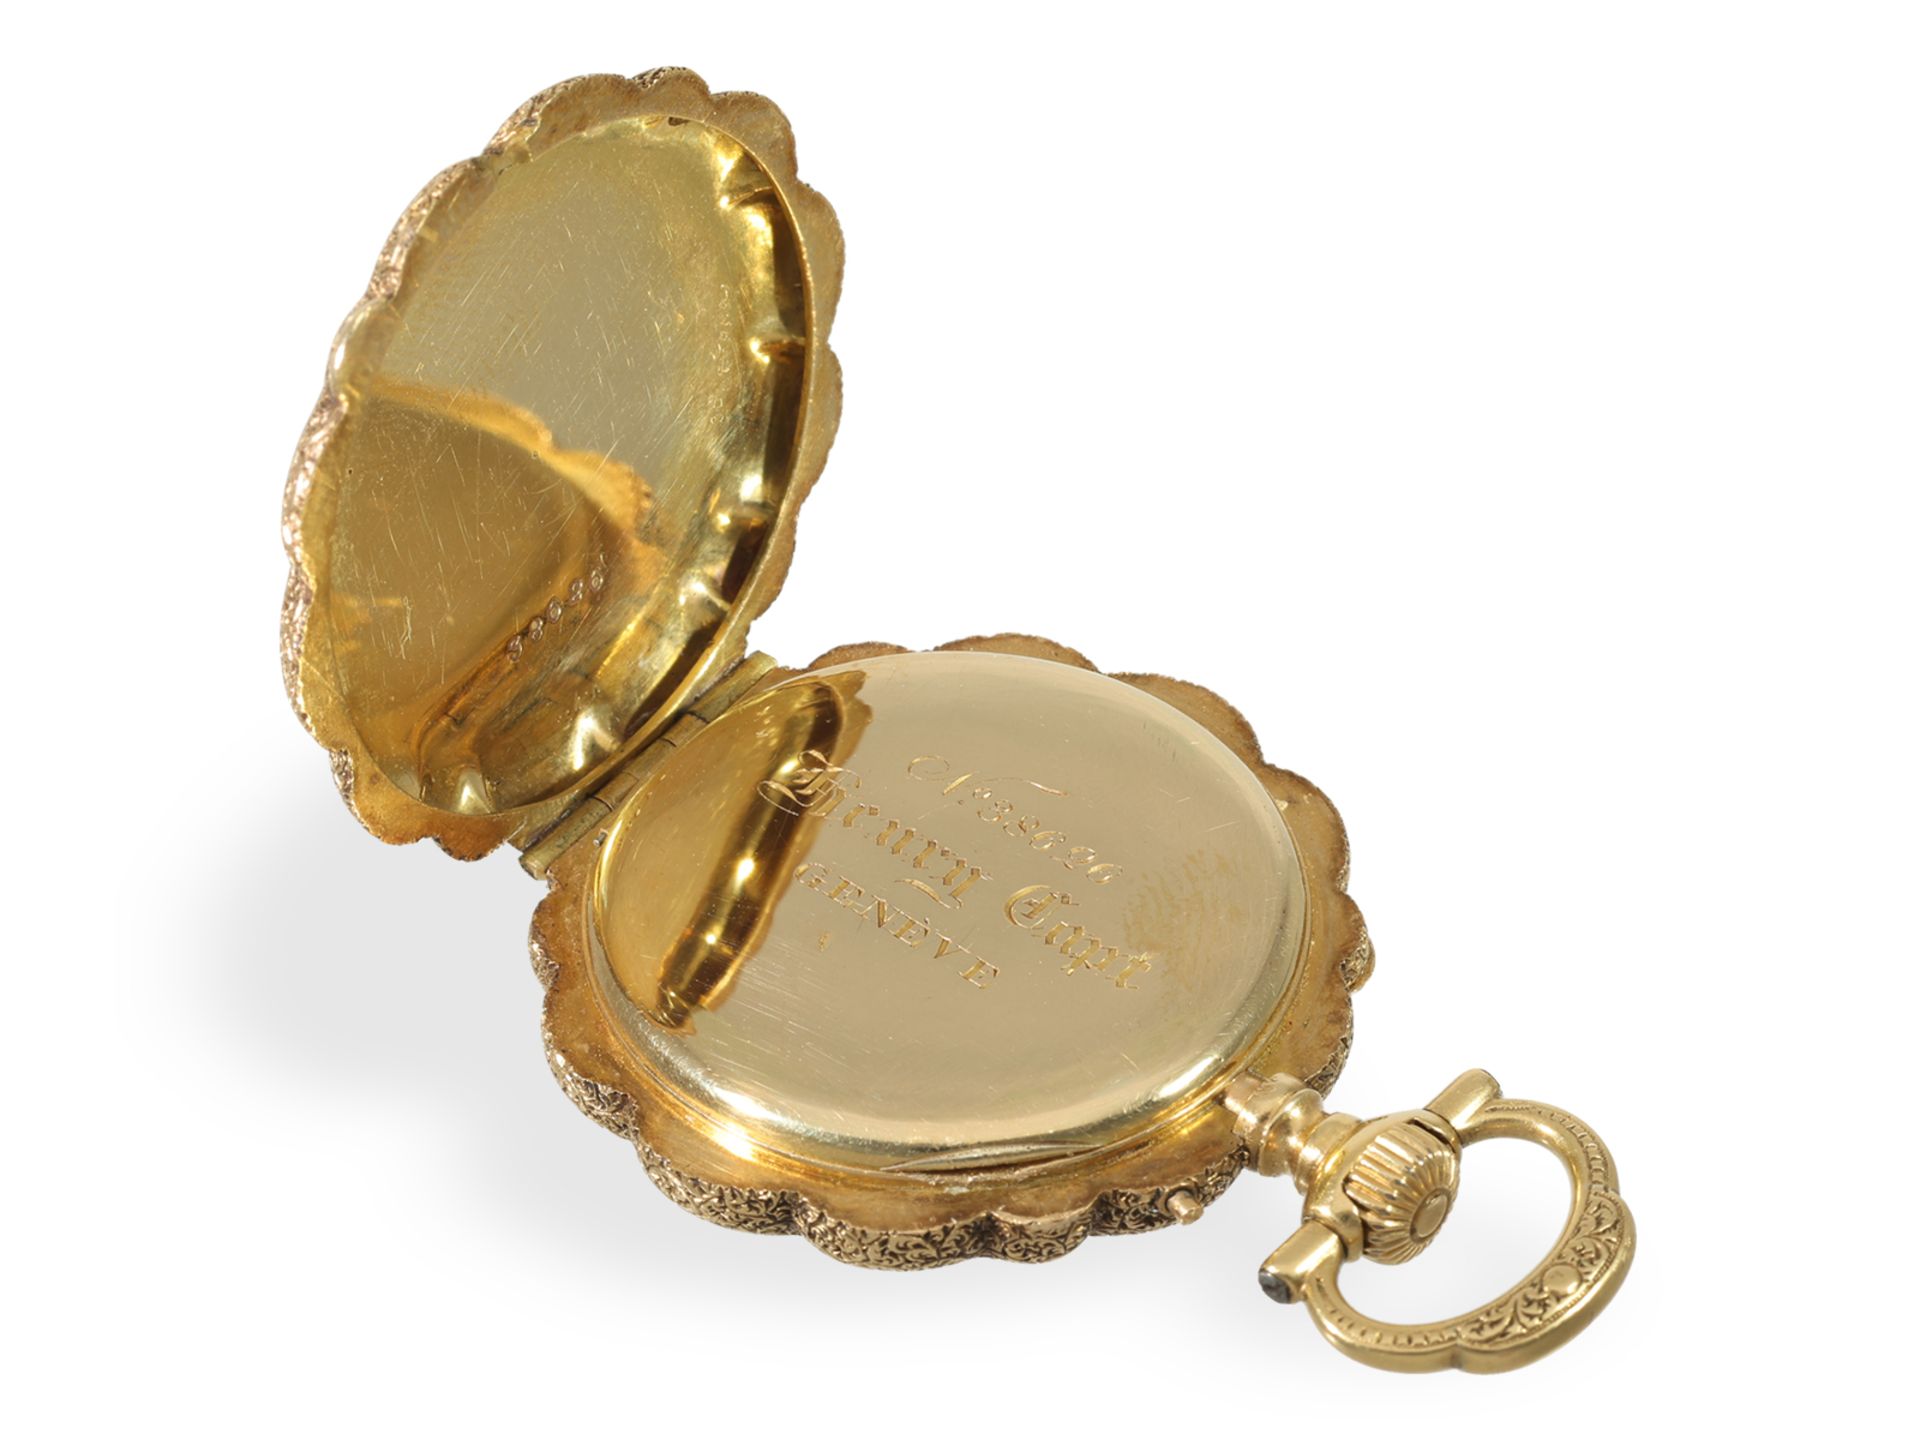 Taschenuhr: exquisite Gold/Emaille Damenuhr für den indischen Markt, Henry Capt Geneve um 1880 - Bild 6 aus 6